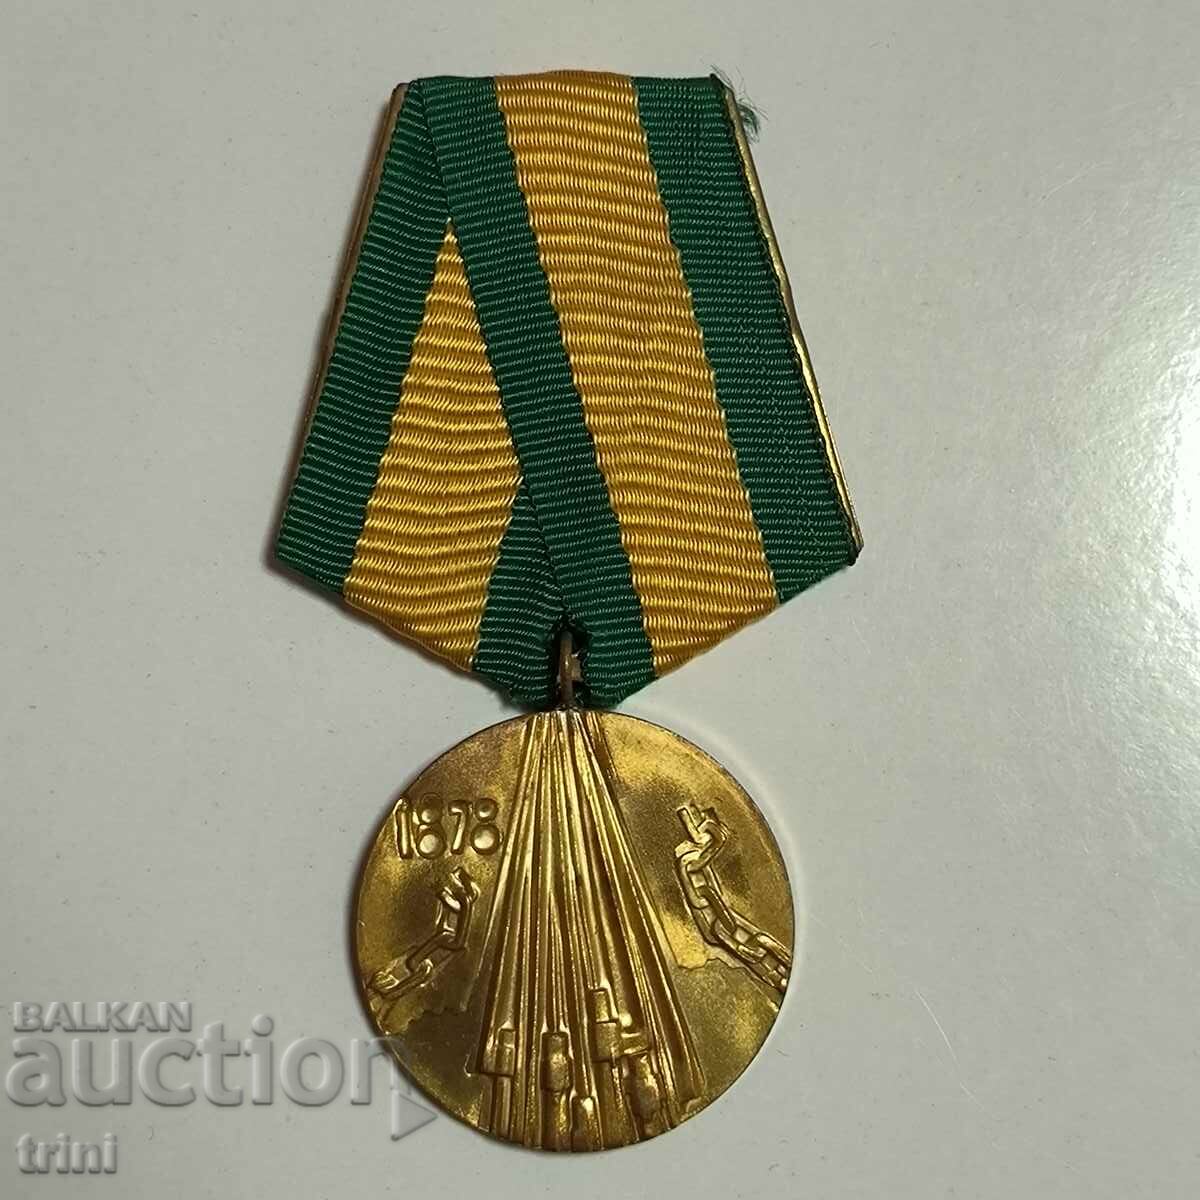 Μετάλλιο 100 χρόνια από την Απελευθέρωση της Βουλγαρίας